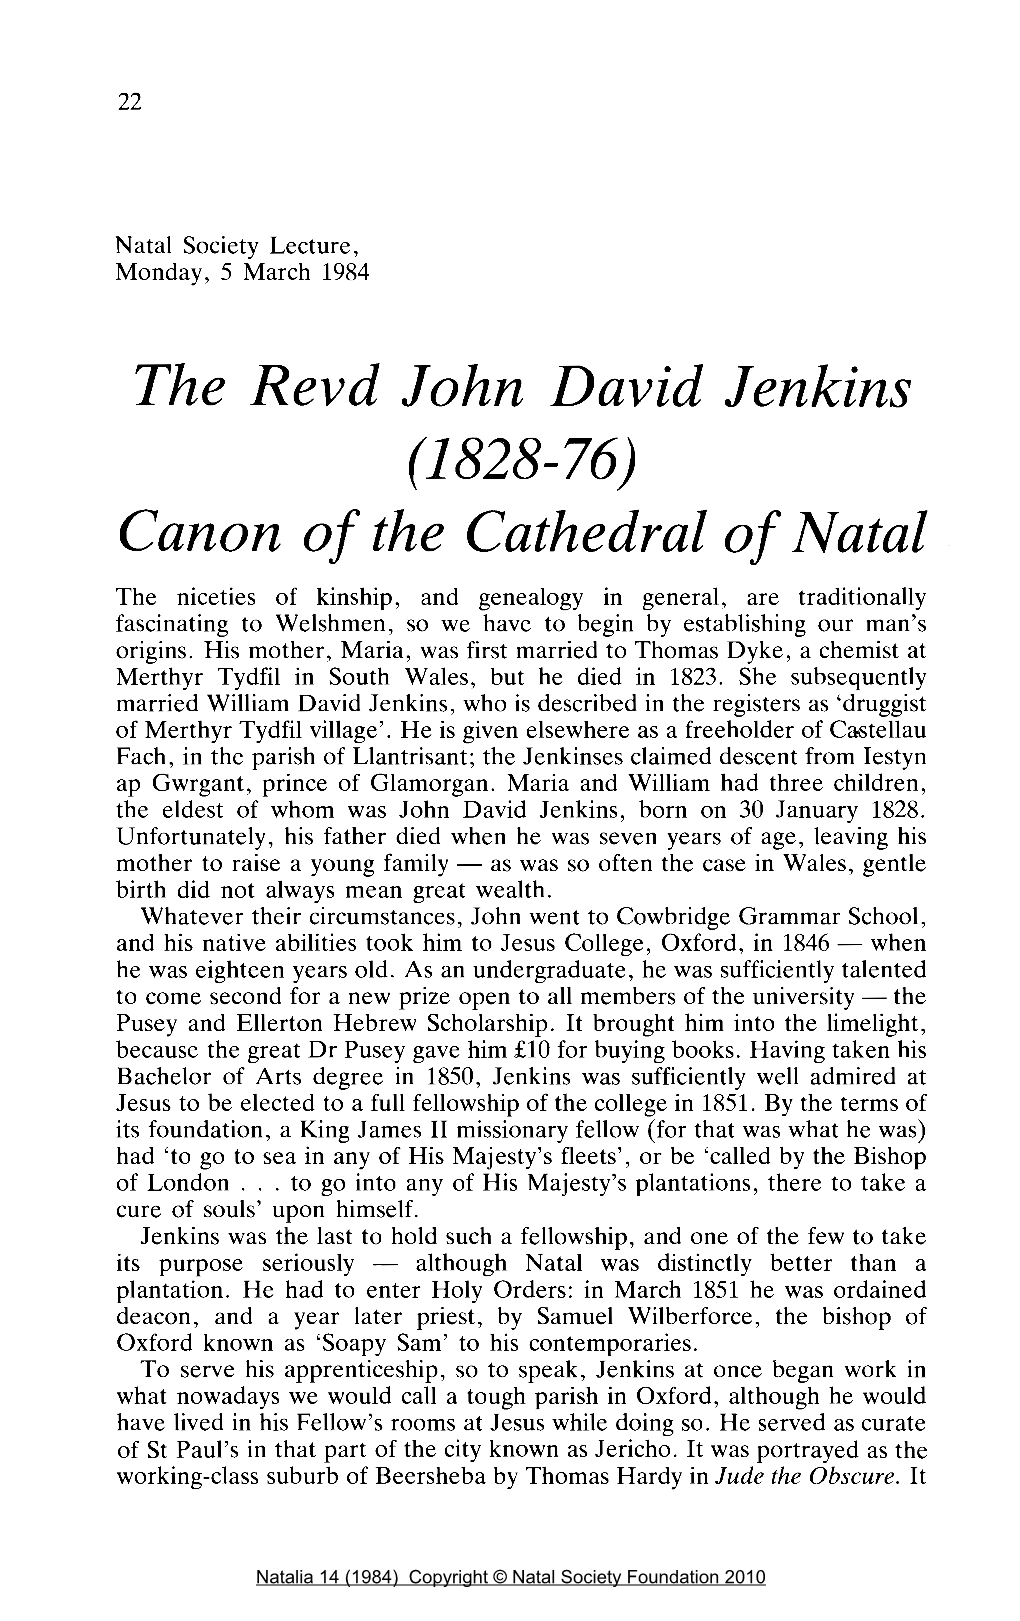 The Revd John David Jenkins (1828-76)